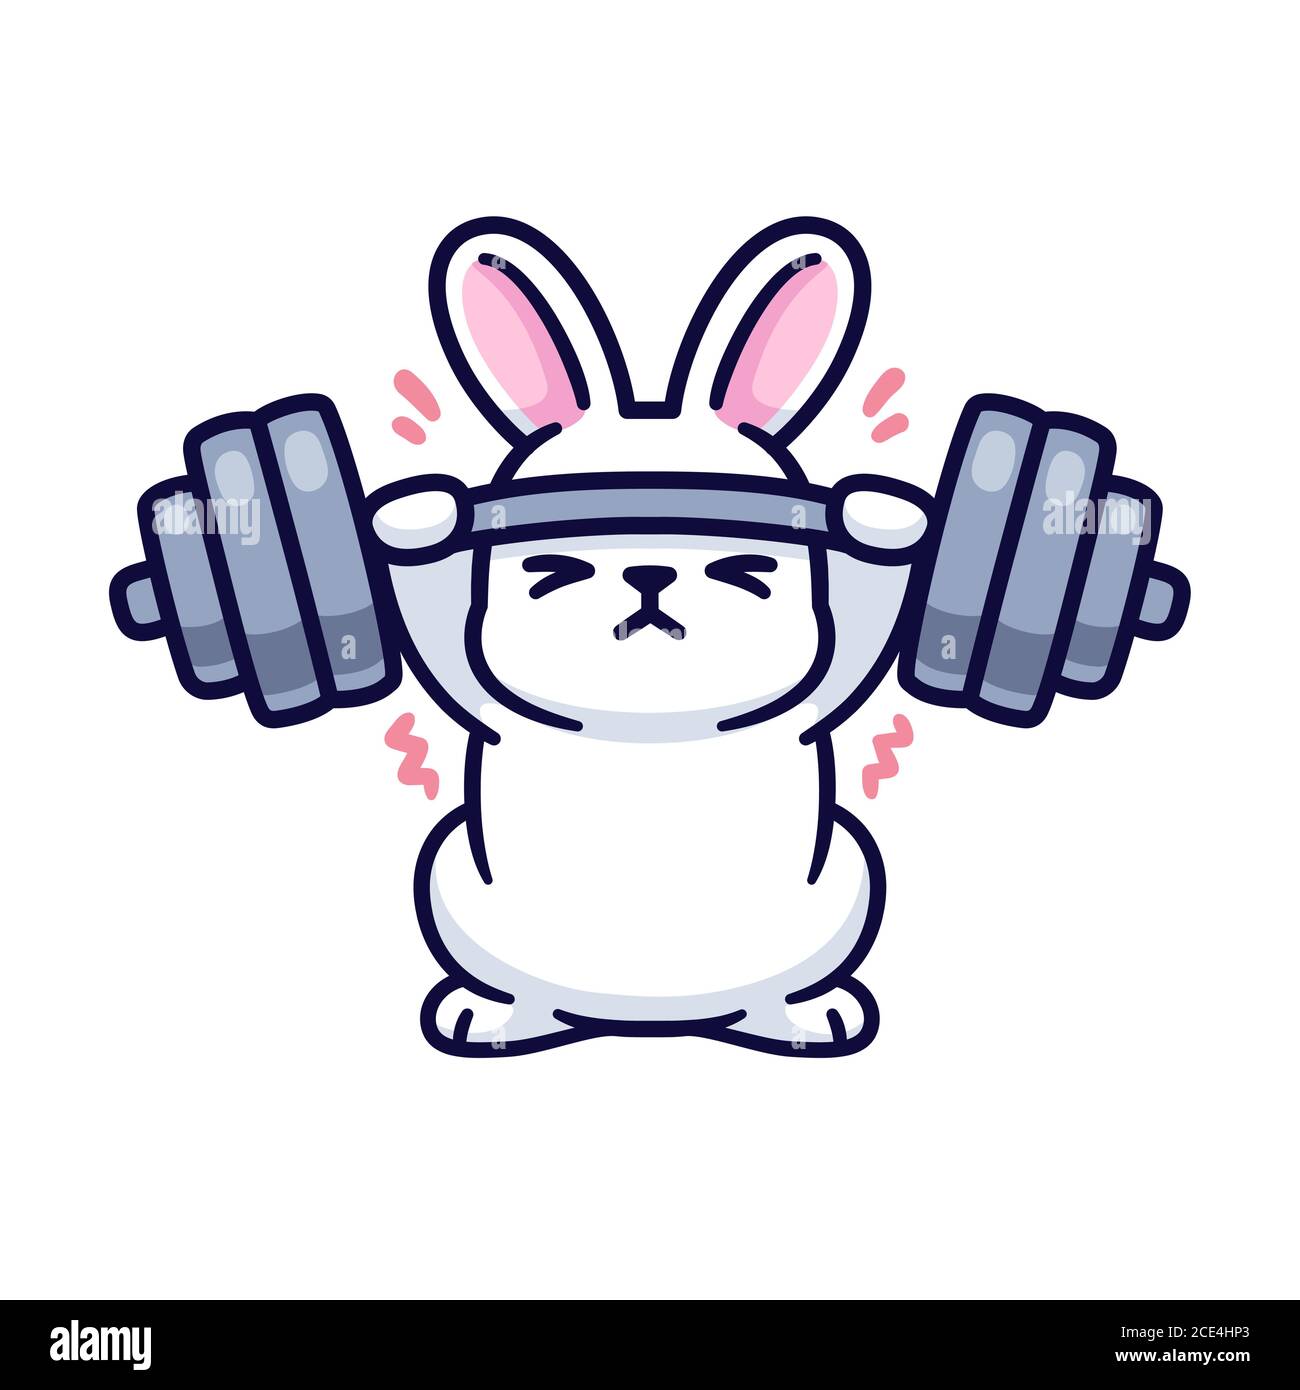 Gym coniglietto, carino cartone animato bianco coniglio sollevamento pesante barbell. Divertente disegno di forma fisica e di esercizio, illustrazione vettoriale isolata. Illustrazione Vettoriale